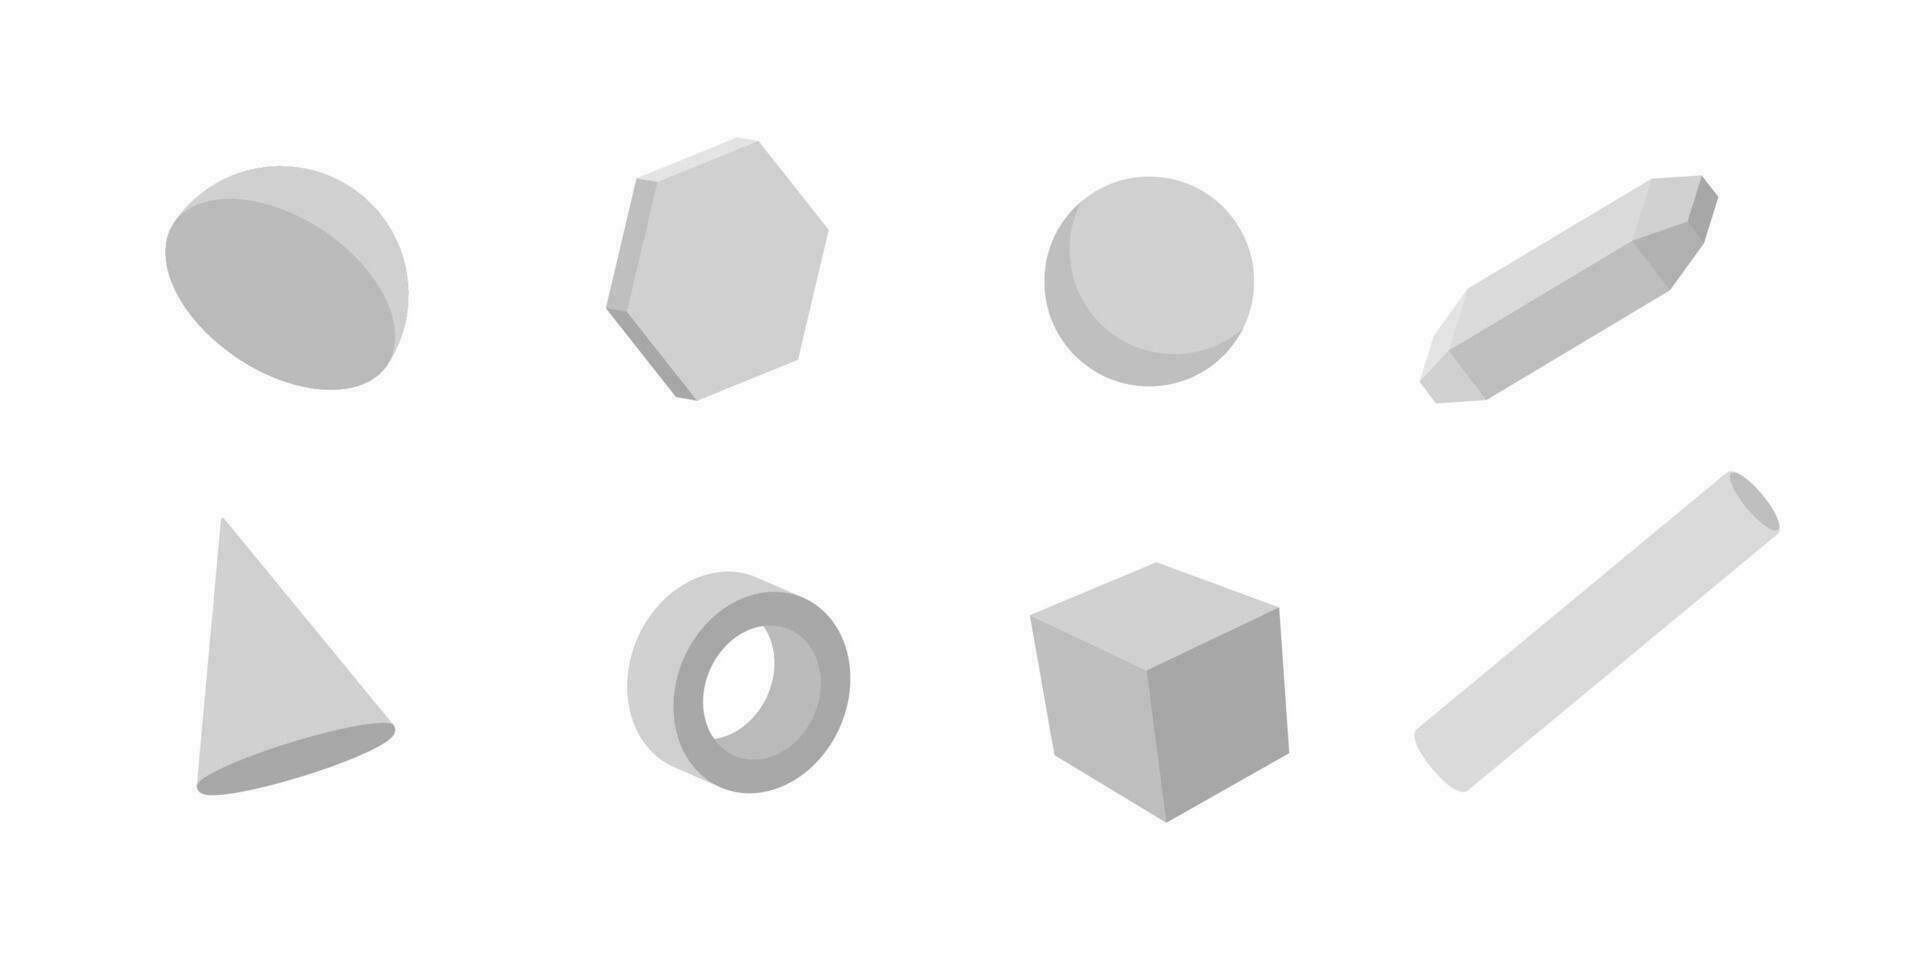 blanco geométrico 3d formas colocar. gris cilindros con hexágono y triángulo como moderno diseño elementos con objeto de sencillo vector construcciones